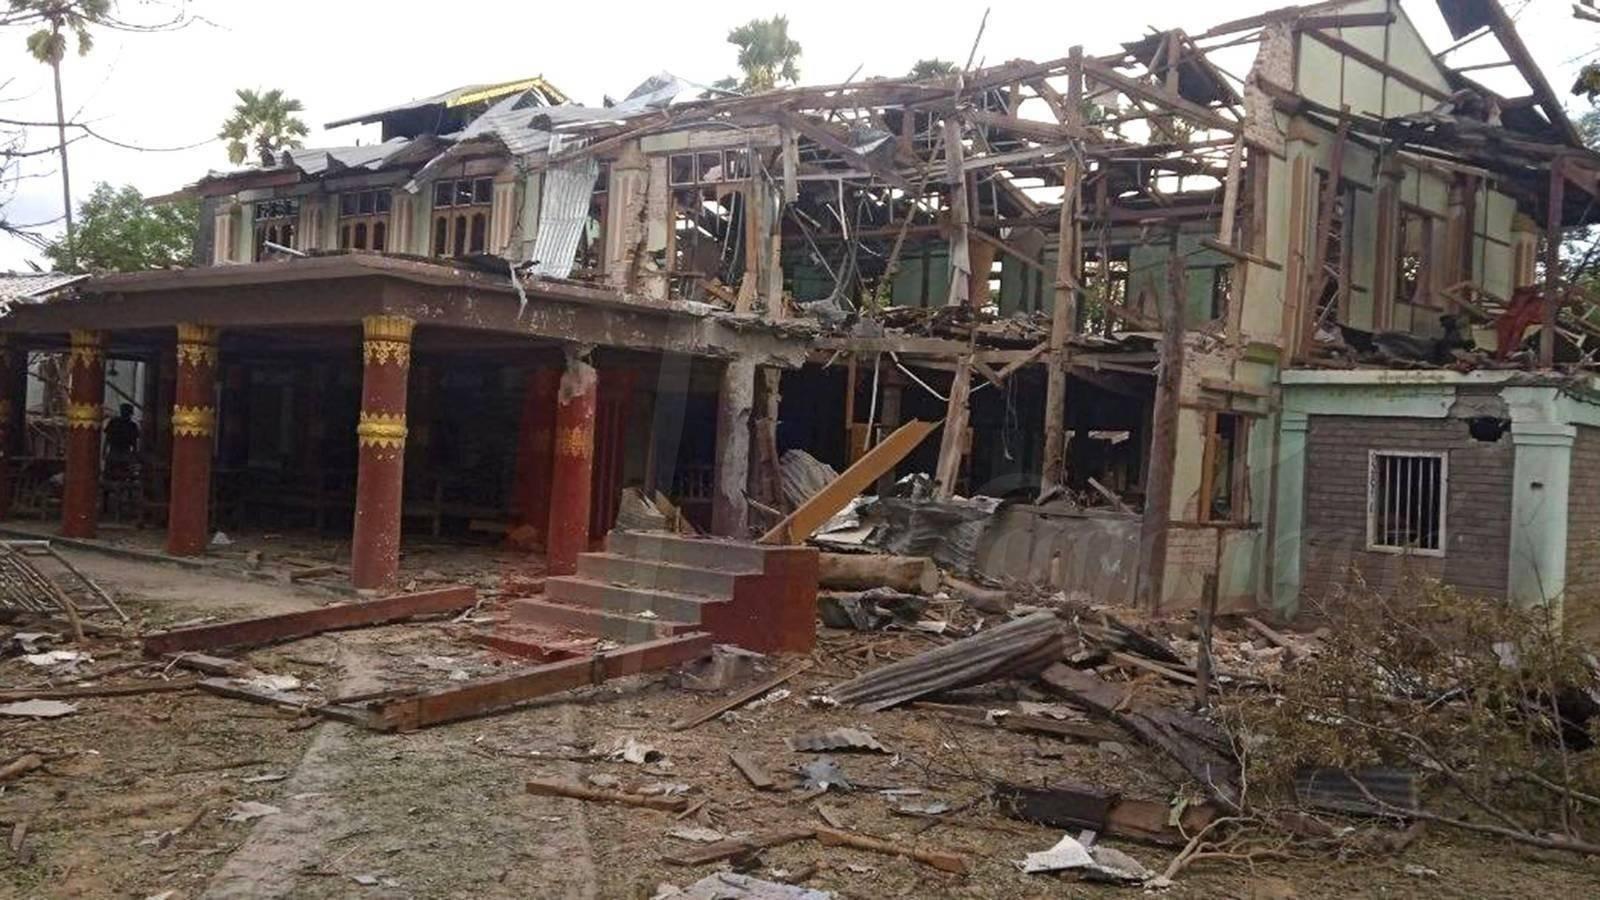 ပုံစာ - ပုလဲမြို့နယ်၊ ညောင်ကုန်းကျေးရွာ လေကြောင်းတိုက်ခိုက်ခံရမှုကြောင့် ပျက်စီးသွားသည့် ဘုန်းကြီးကျောင်း။